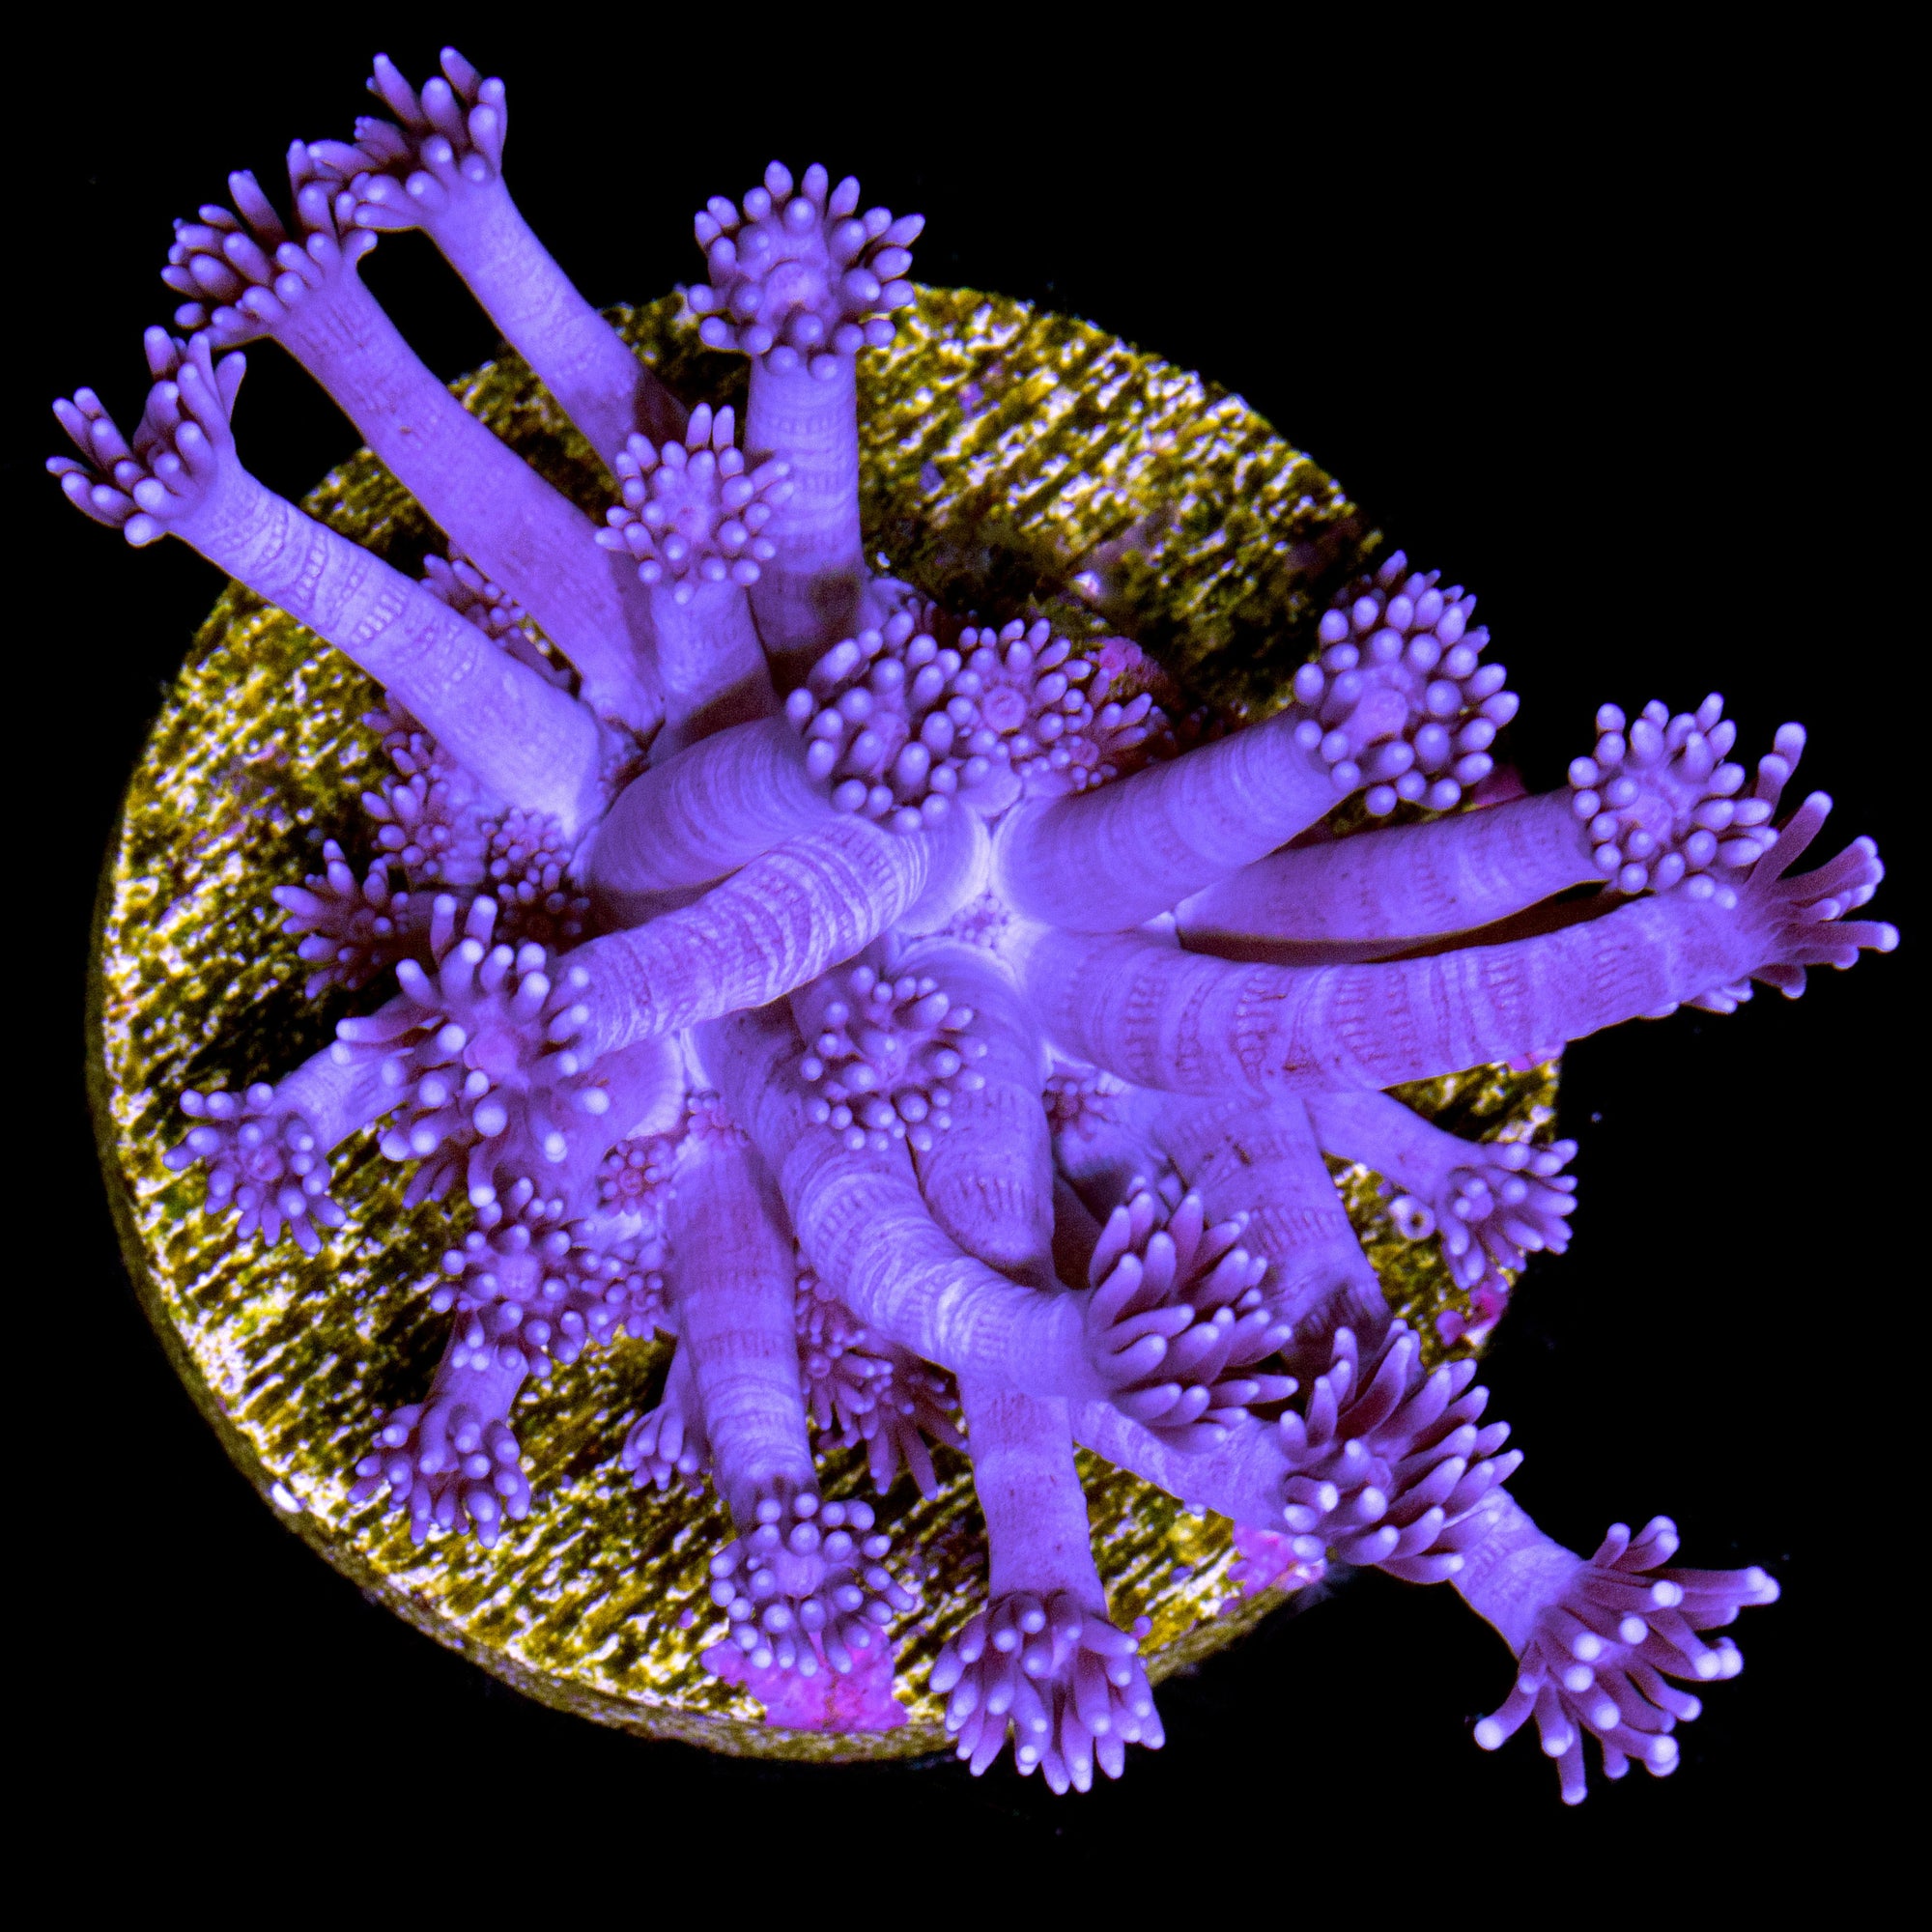 Escurre Biberones Plegable Coral